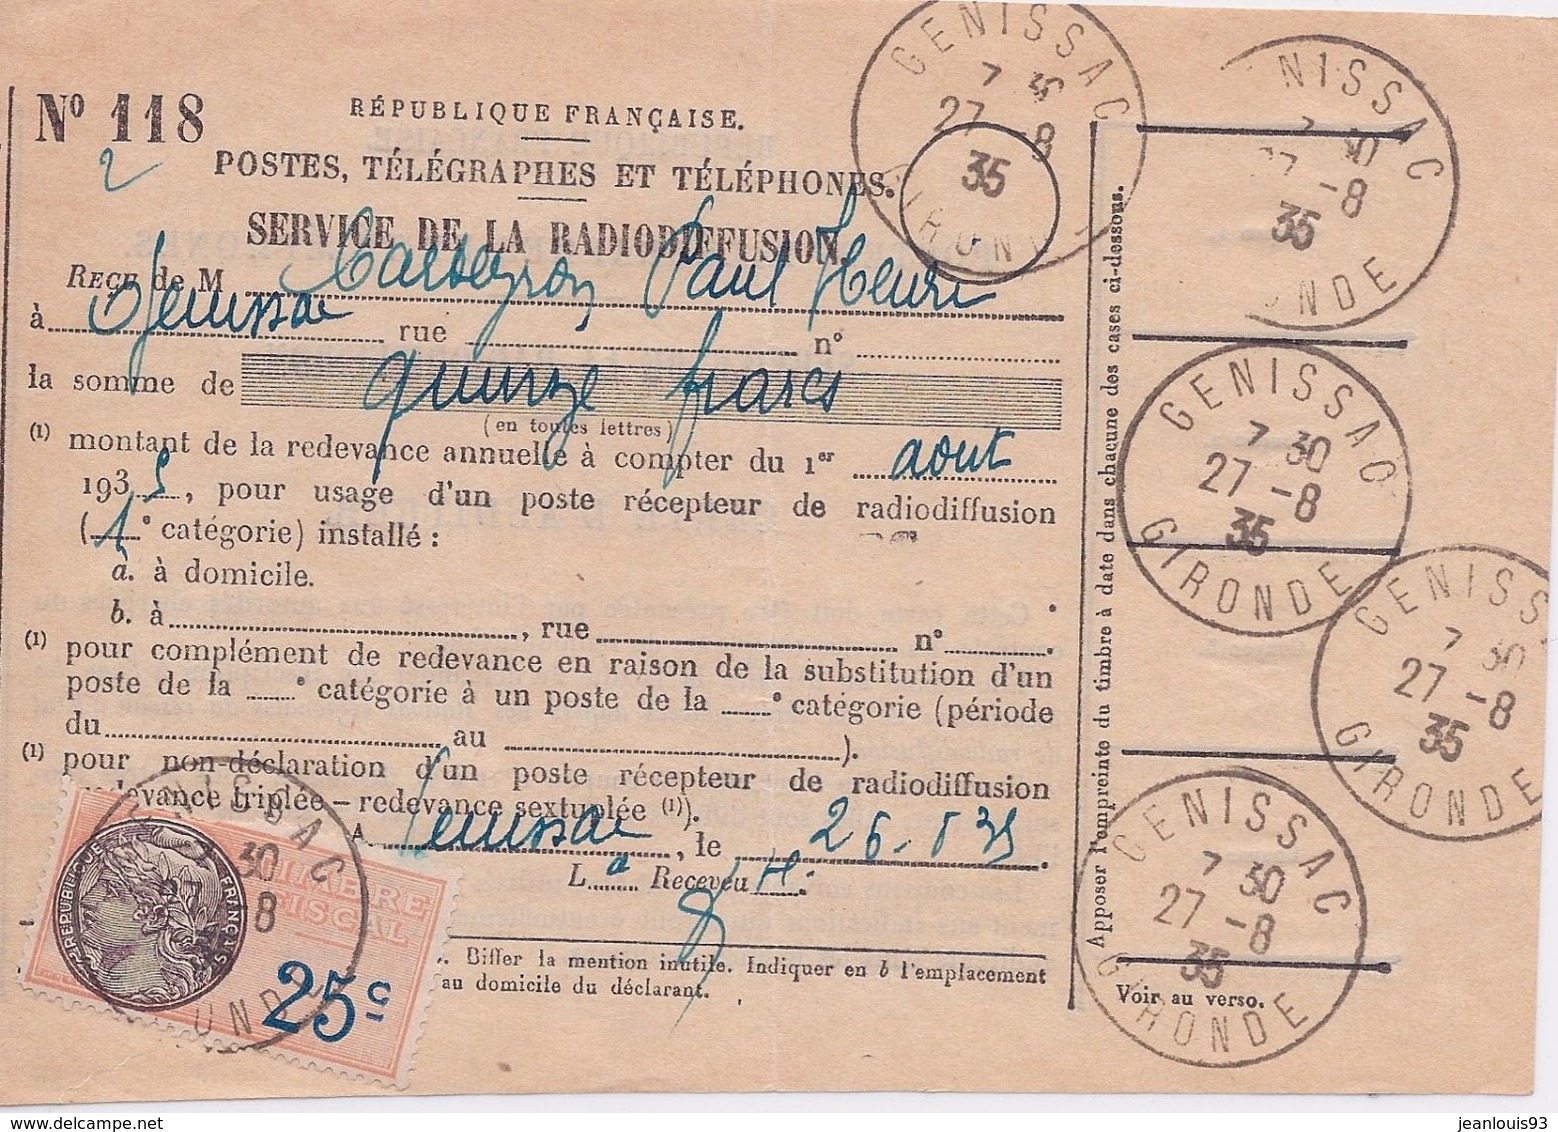 FRANCE - BULLETIN DE RADIODIFFUSION TIMBRE FISCAL 1935 - Radiodiffusion